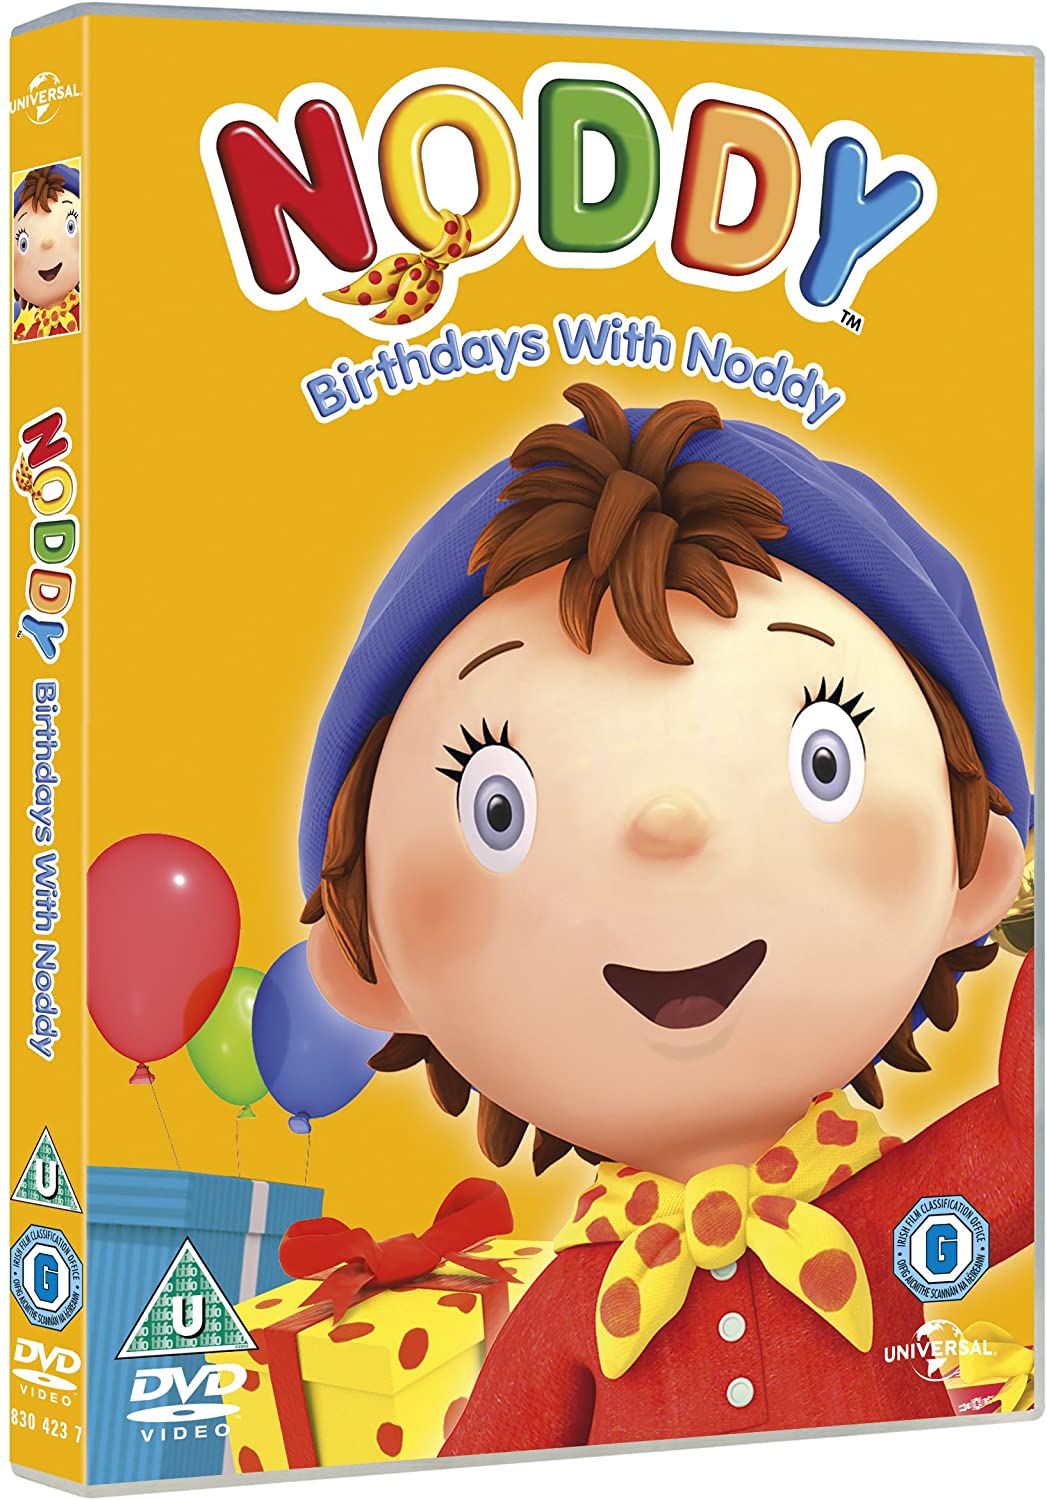 Noddy in Toyland - Birthdays With Noddy [2015] - Animation [DVD]